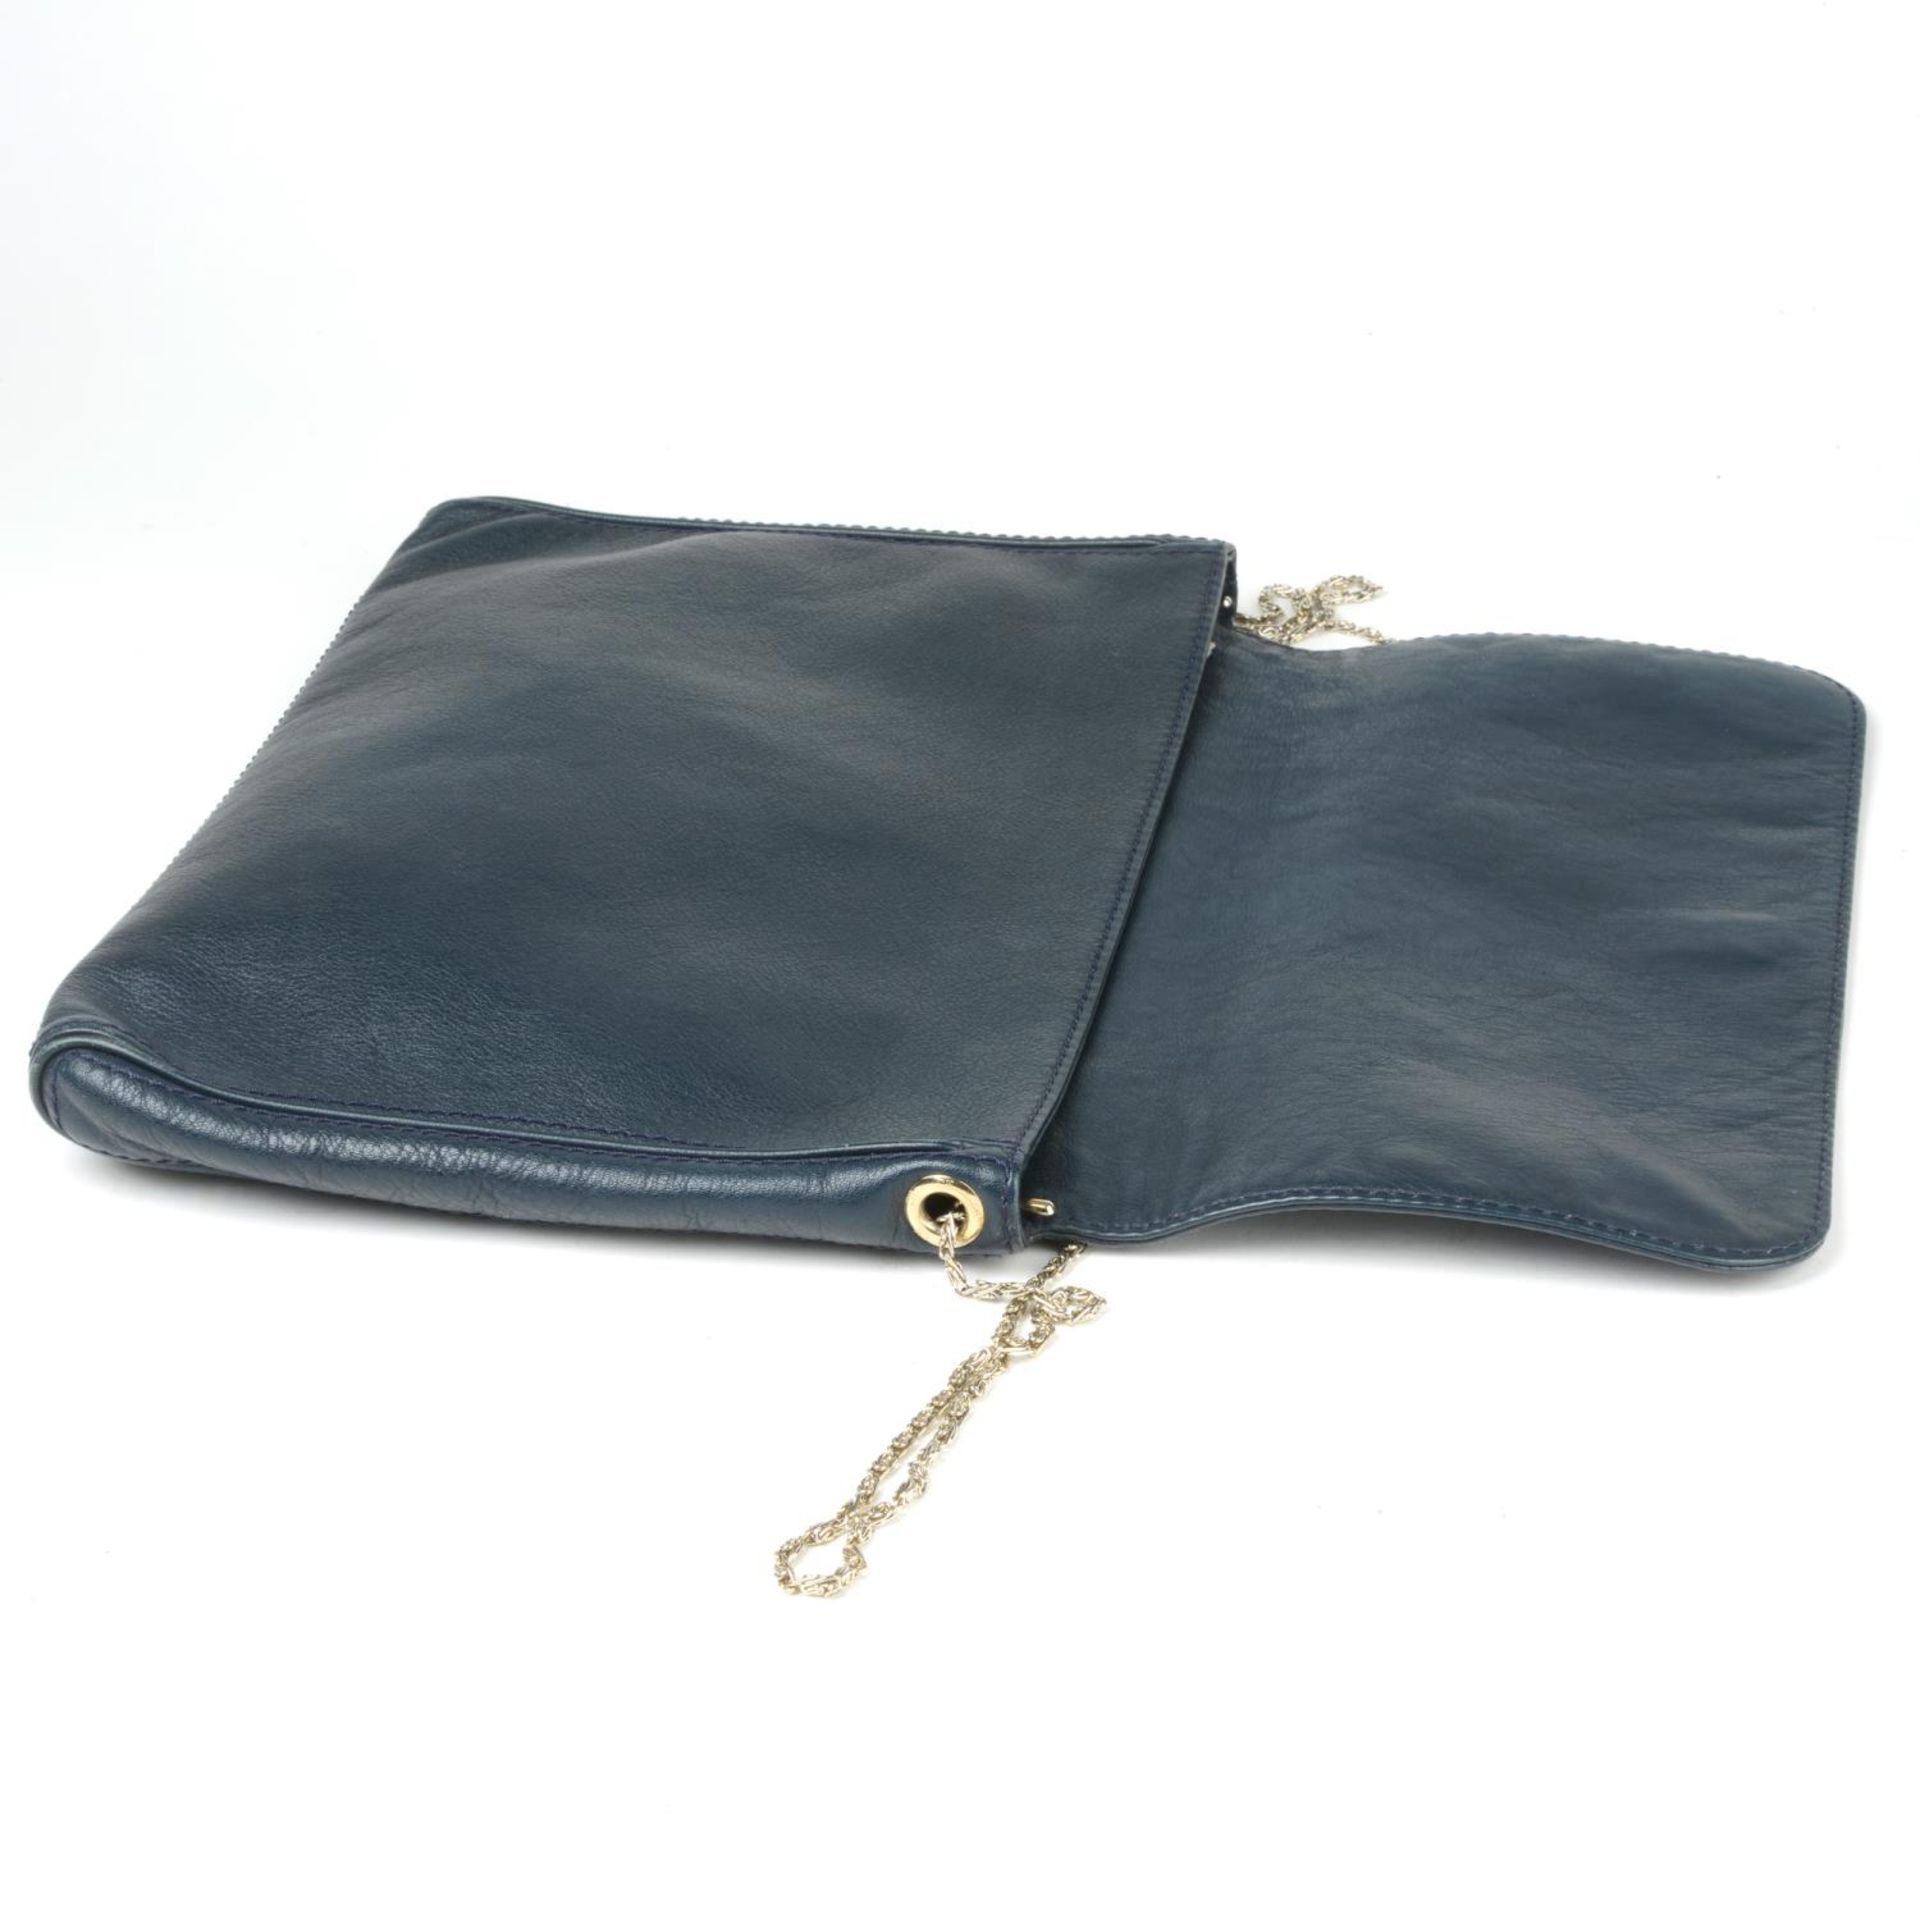 CAROLINA HERRERA - a leather handbag. - Bild 4 aus 4